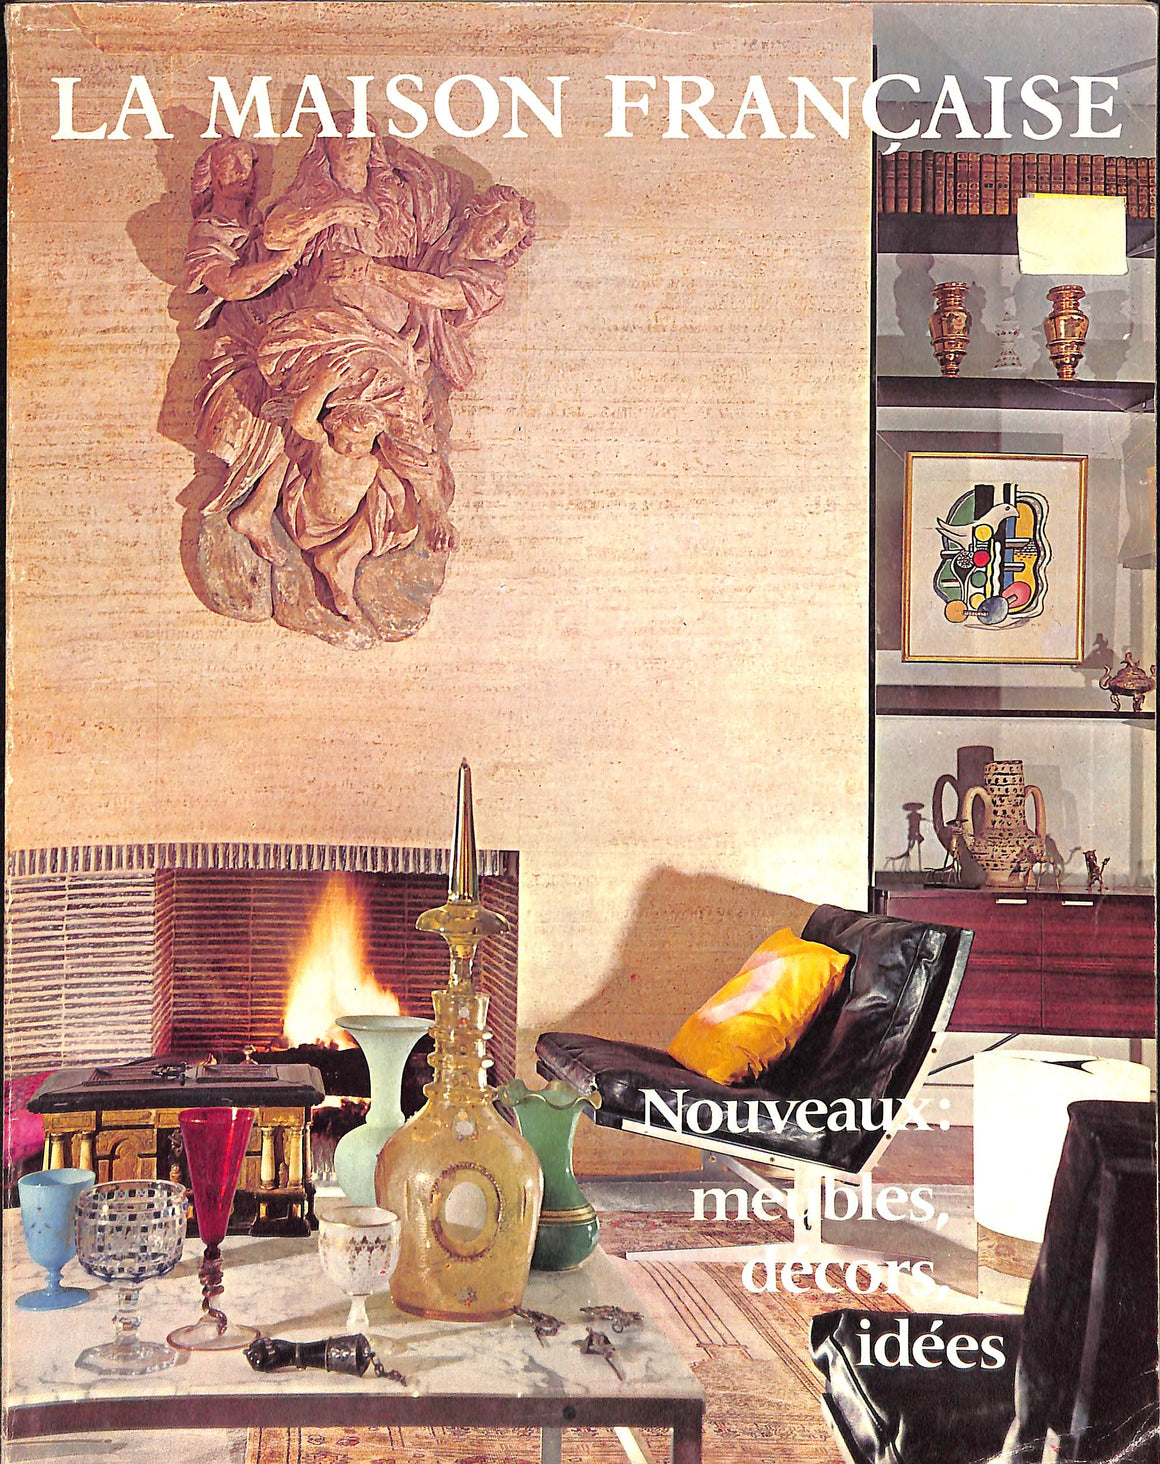 "La Maison Francaise #224 Fevrier 1969" (SOLD)